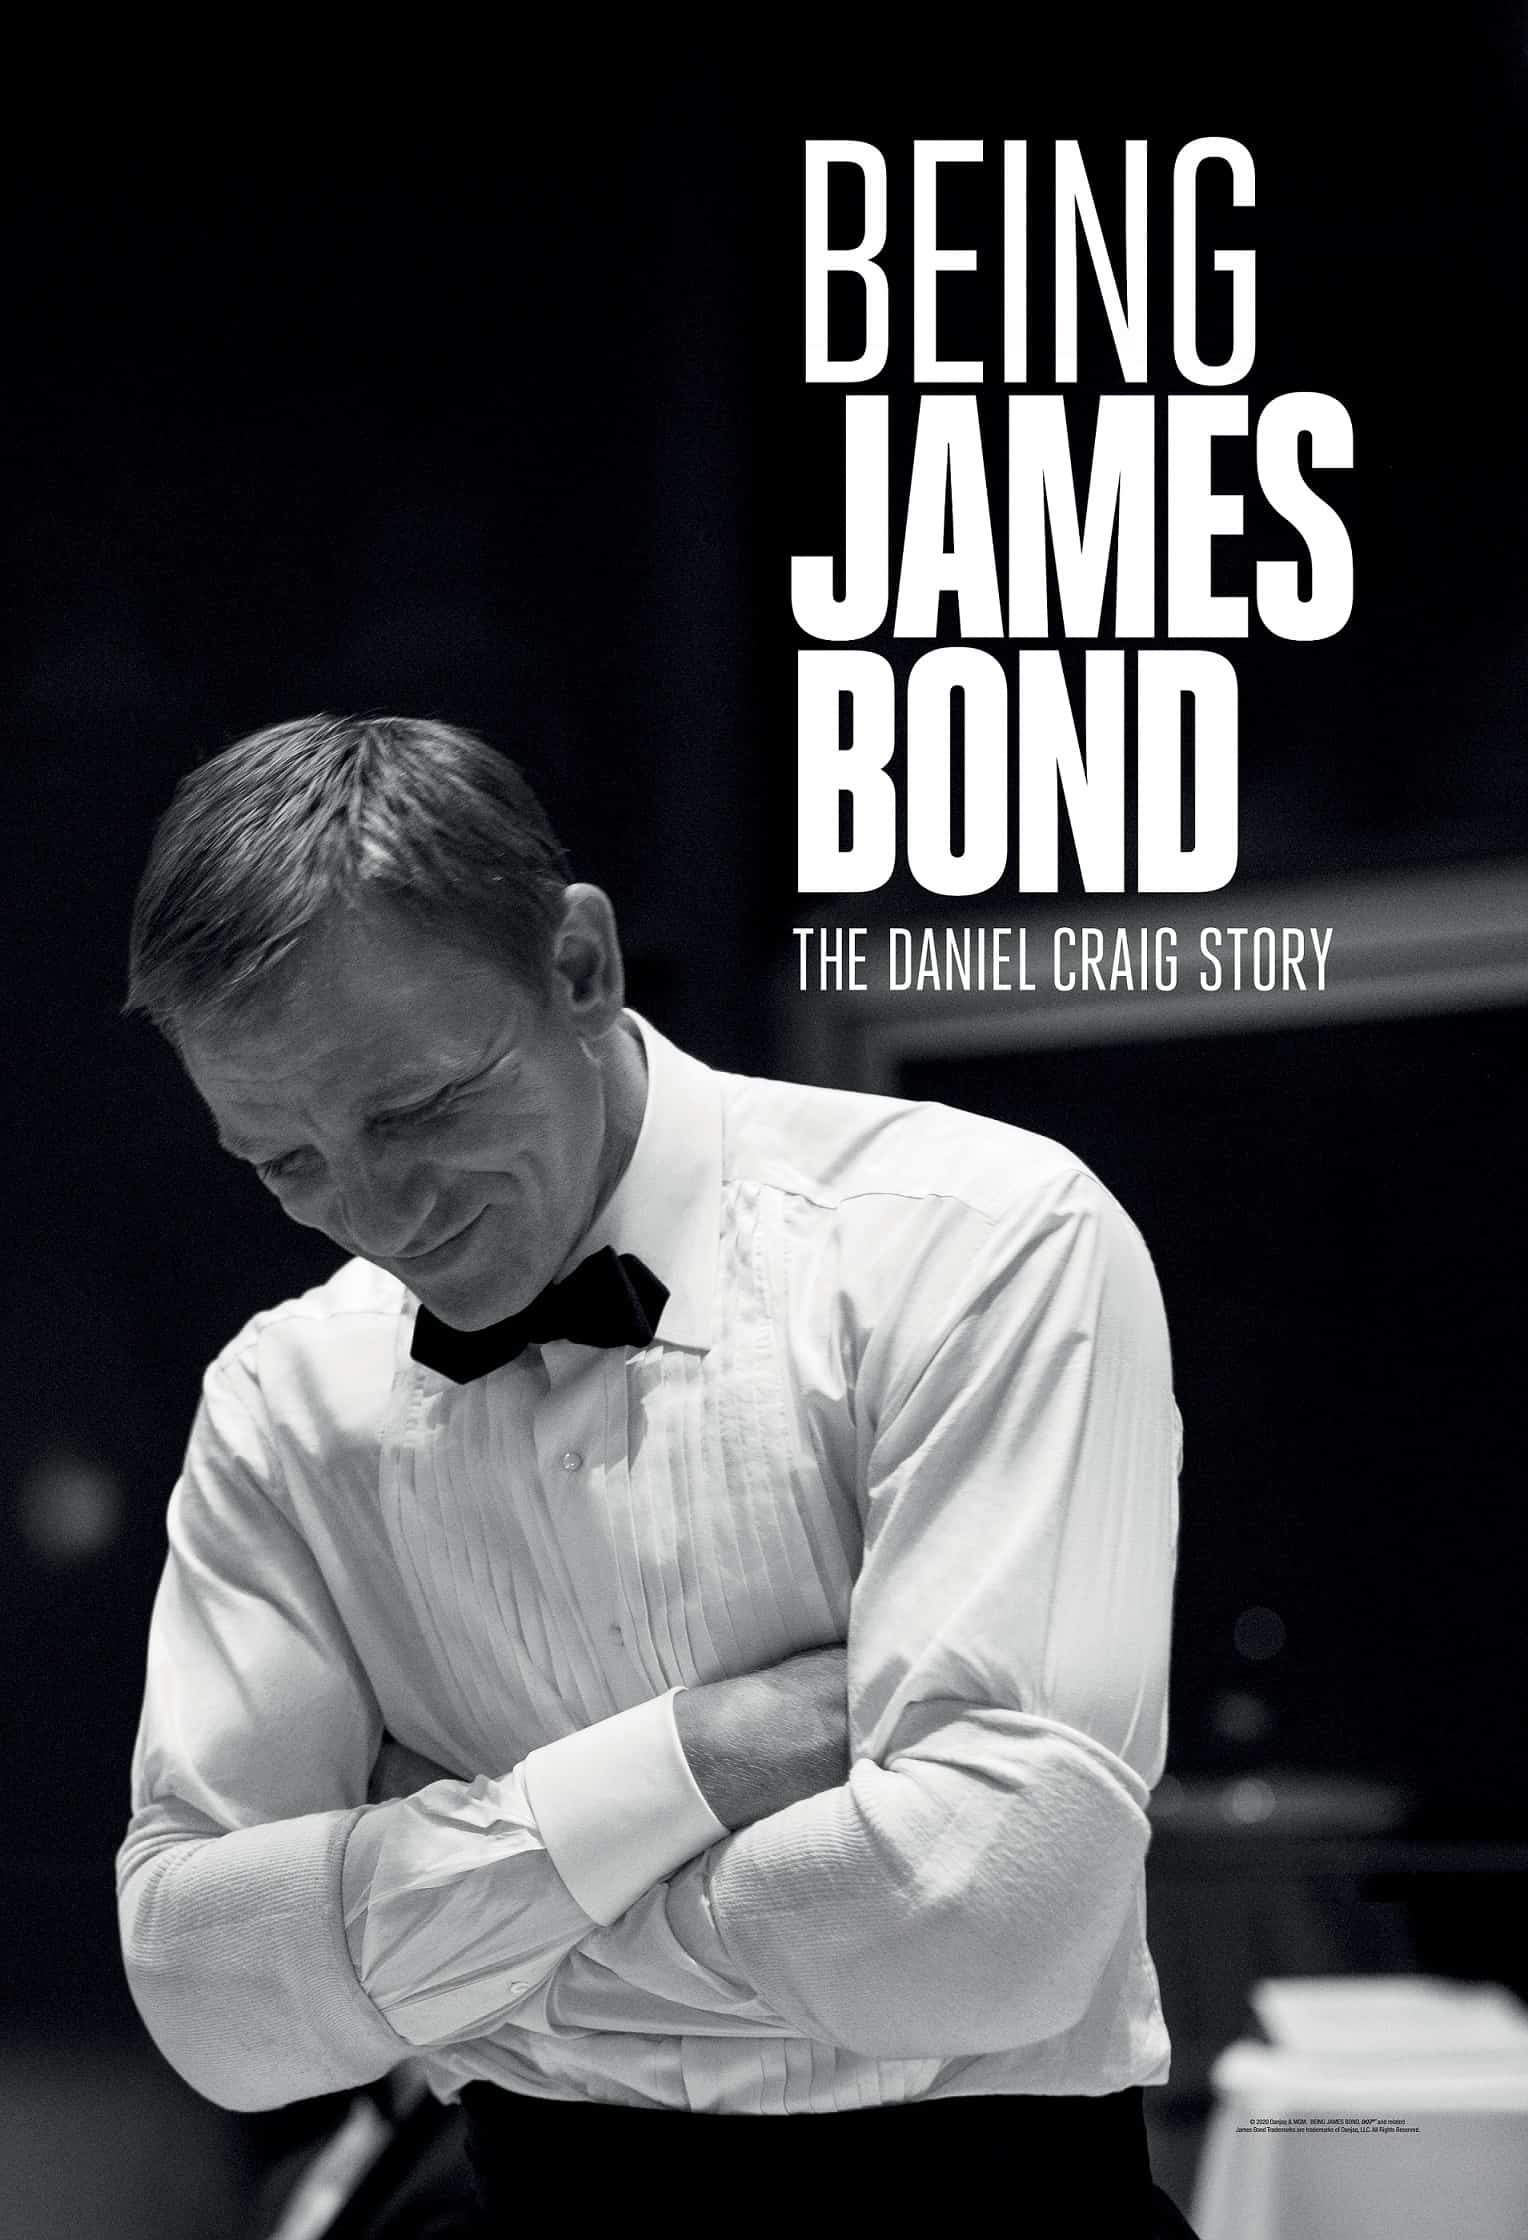 فيلم BEING JAMES BOND يستعرض رحلة دانيال كريج مع شخصية جيمس بوند